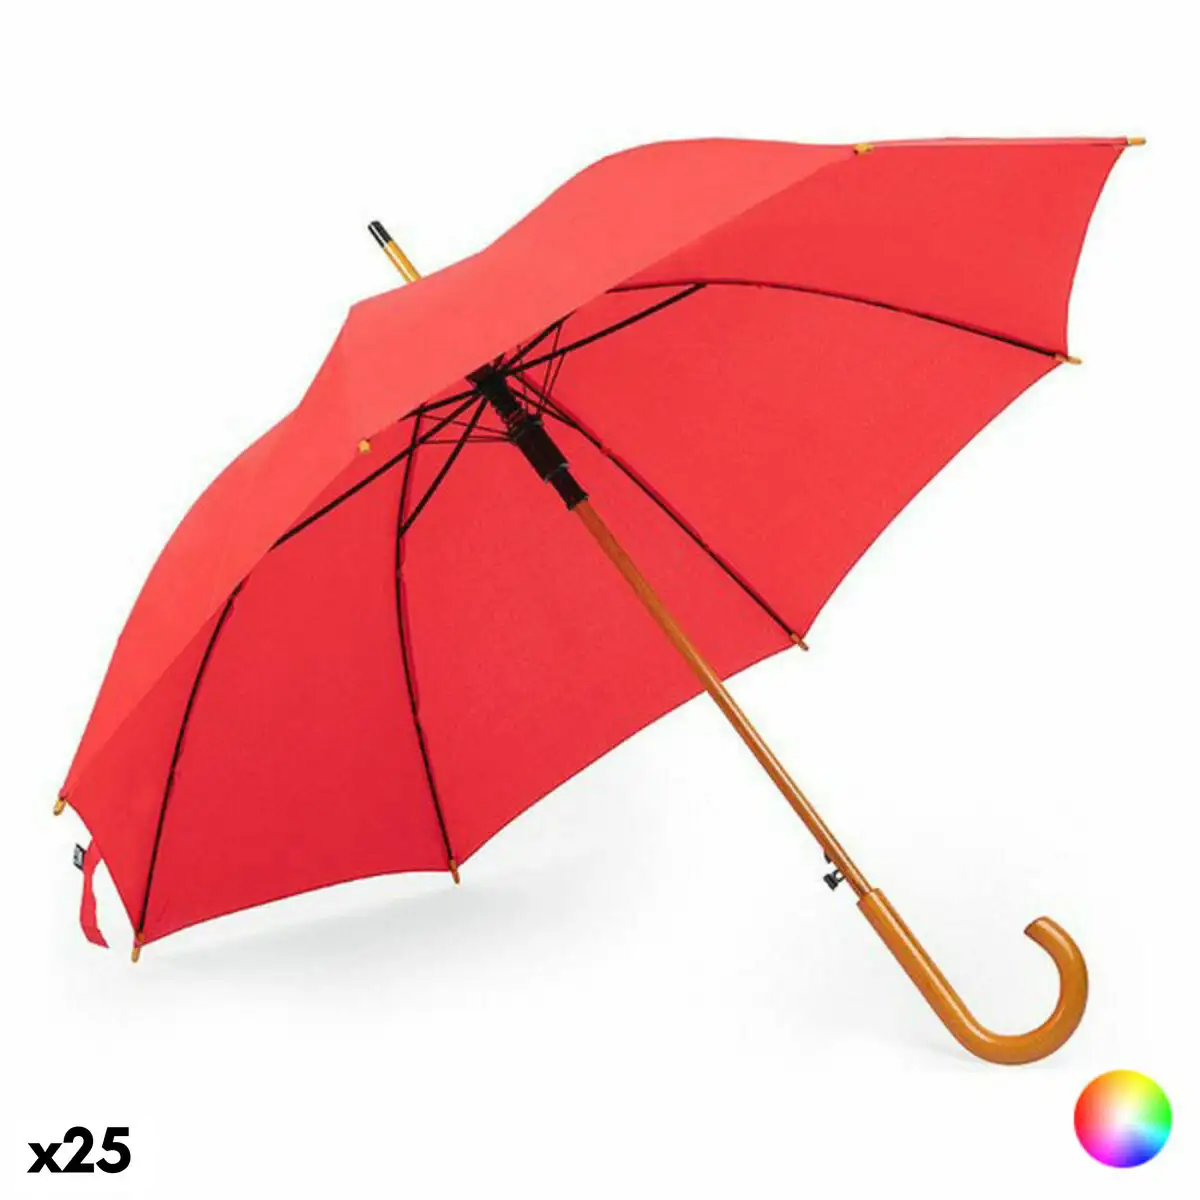 Parapluie 146316 bois plastique recycle 25 unites _5058. DIAYTAR SENEGAL - Votre Boutique en Ligne, Votre Histoire. Explorez notre sélection et découvrez des produits qui reflètent votre parcours et vos aspirations, un achat à la fois.